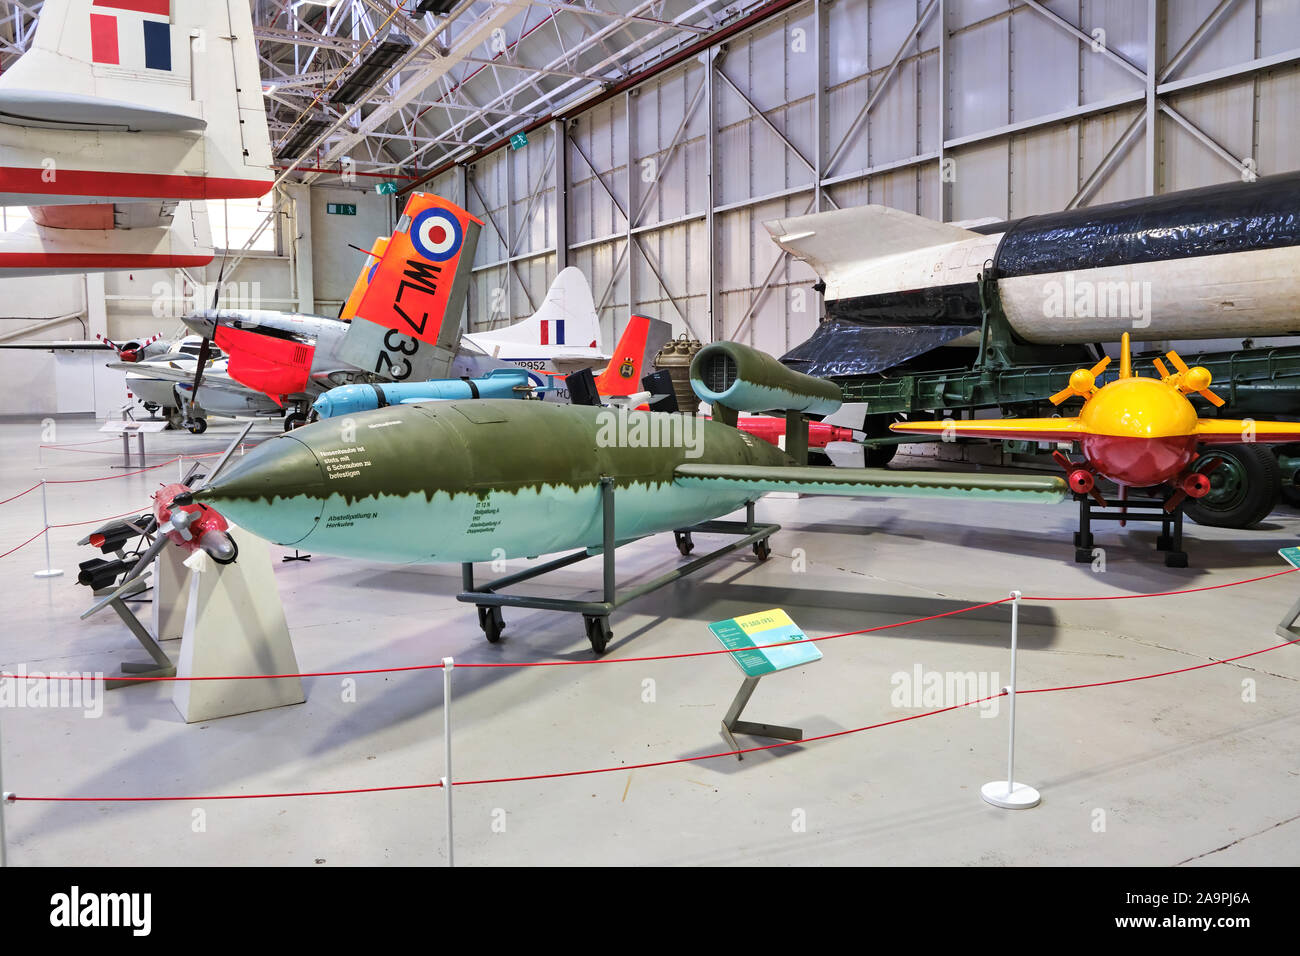 V1 battenti bomba arma vendetta noto anche come doodlebug o buzz bomb (un inizio di missili cruise azionato da un motore pulsejet) sul display presso la RAF Cosford air museum in Shropshire Foto Stock